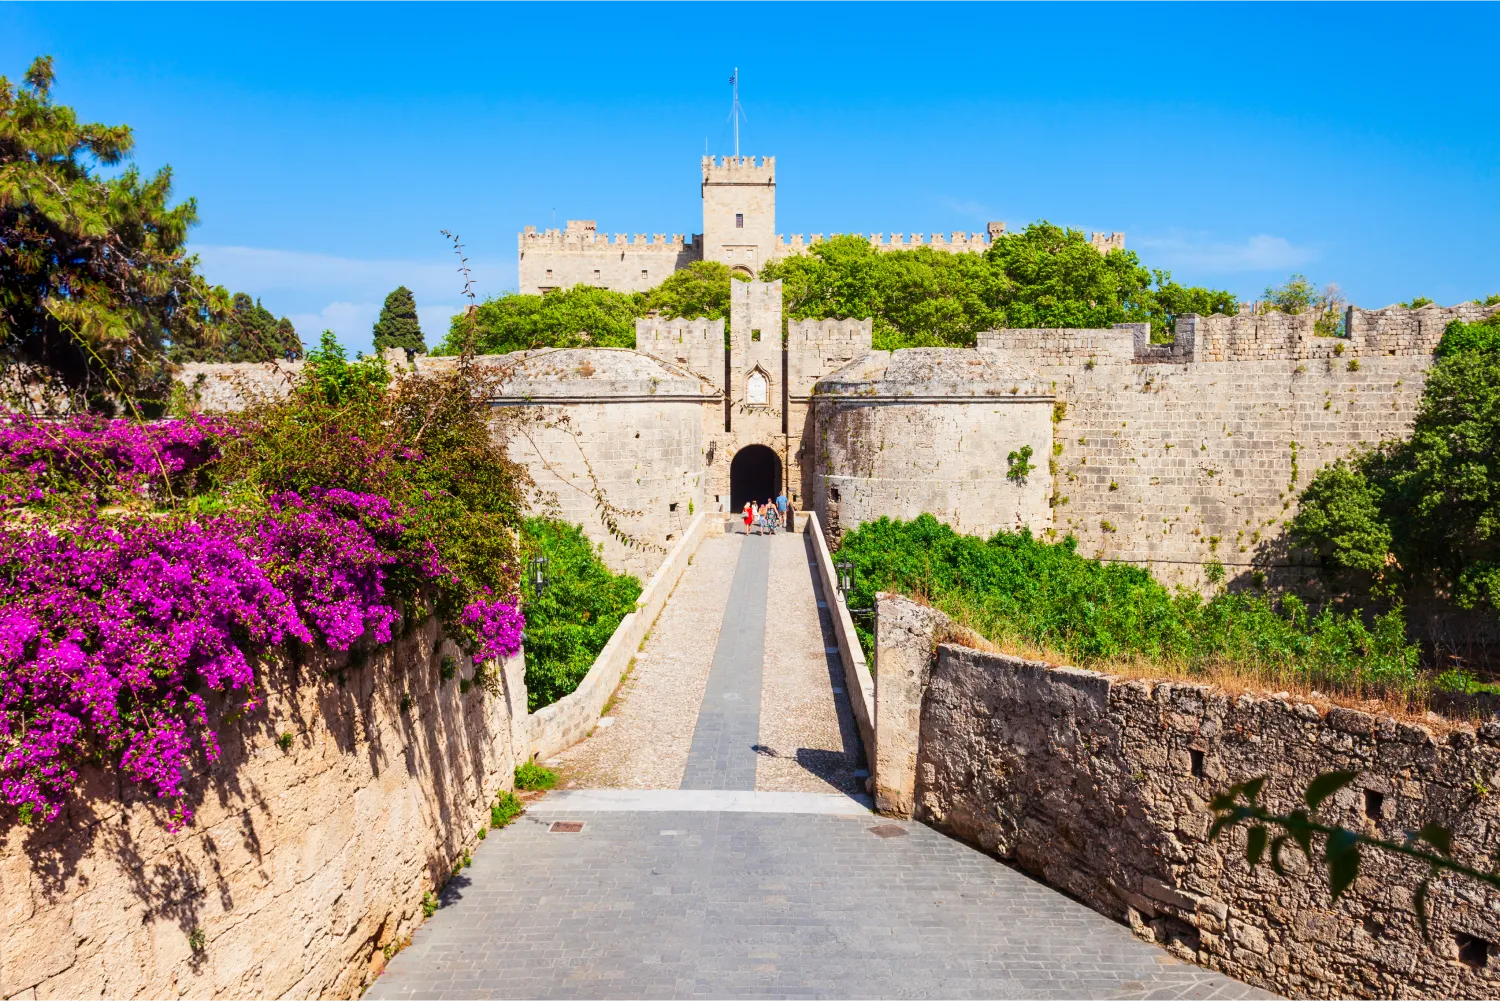 Der Weg zur dominierenden Burg von Rhodos mit Blumen und üppiger Vegetation ringsum